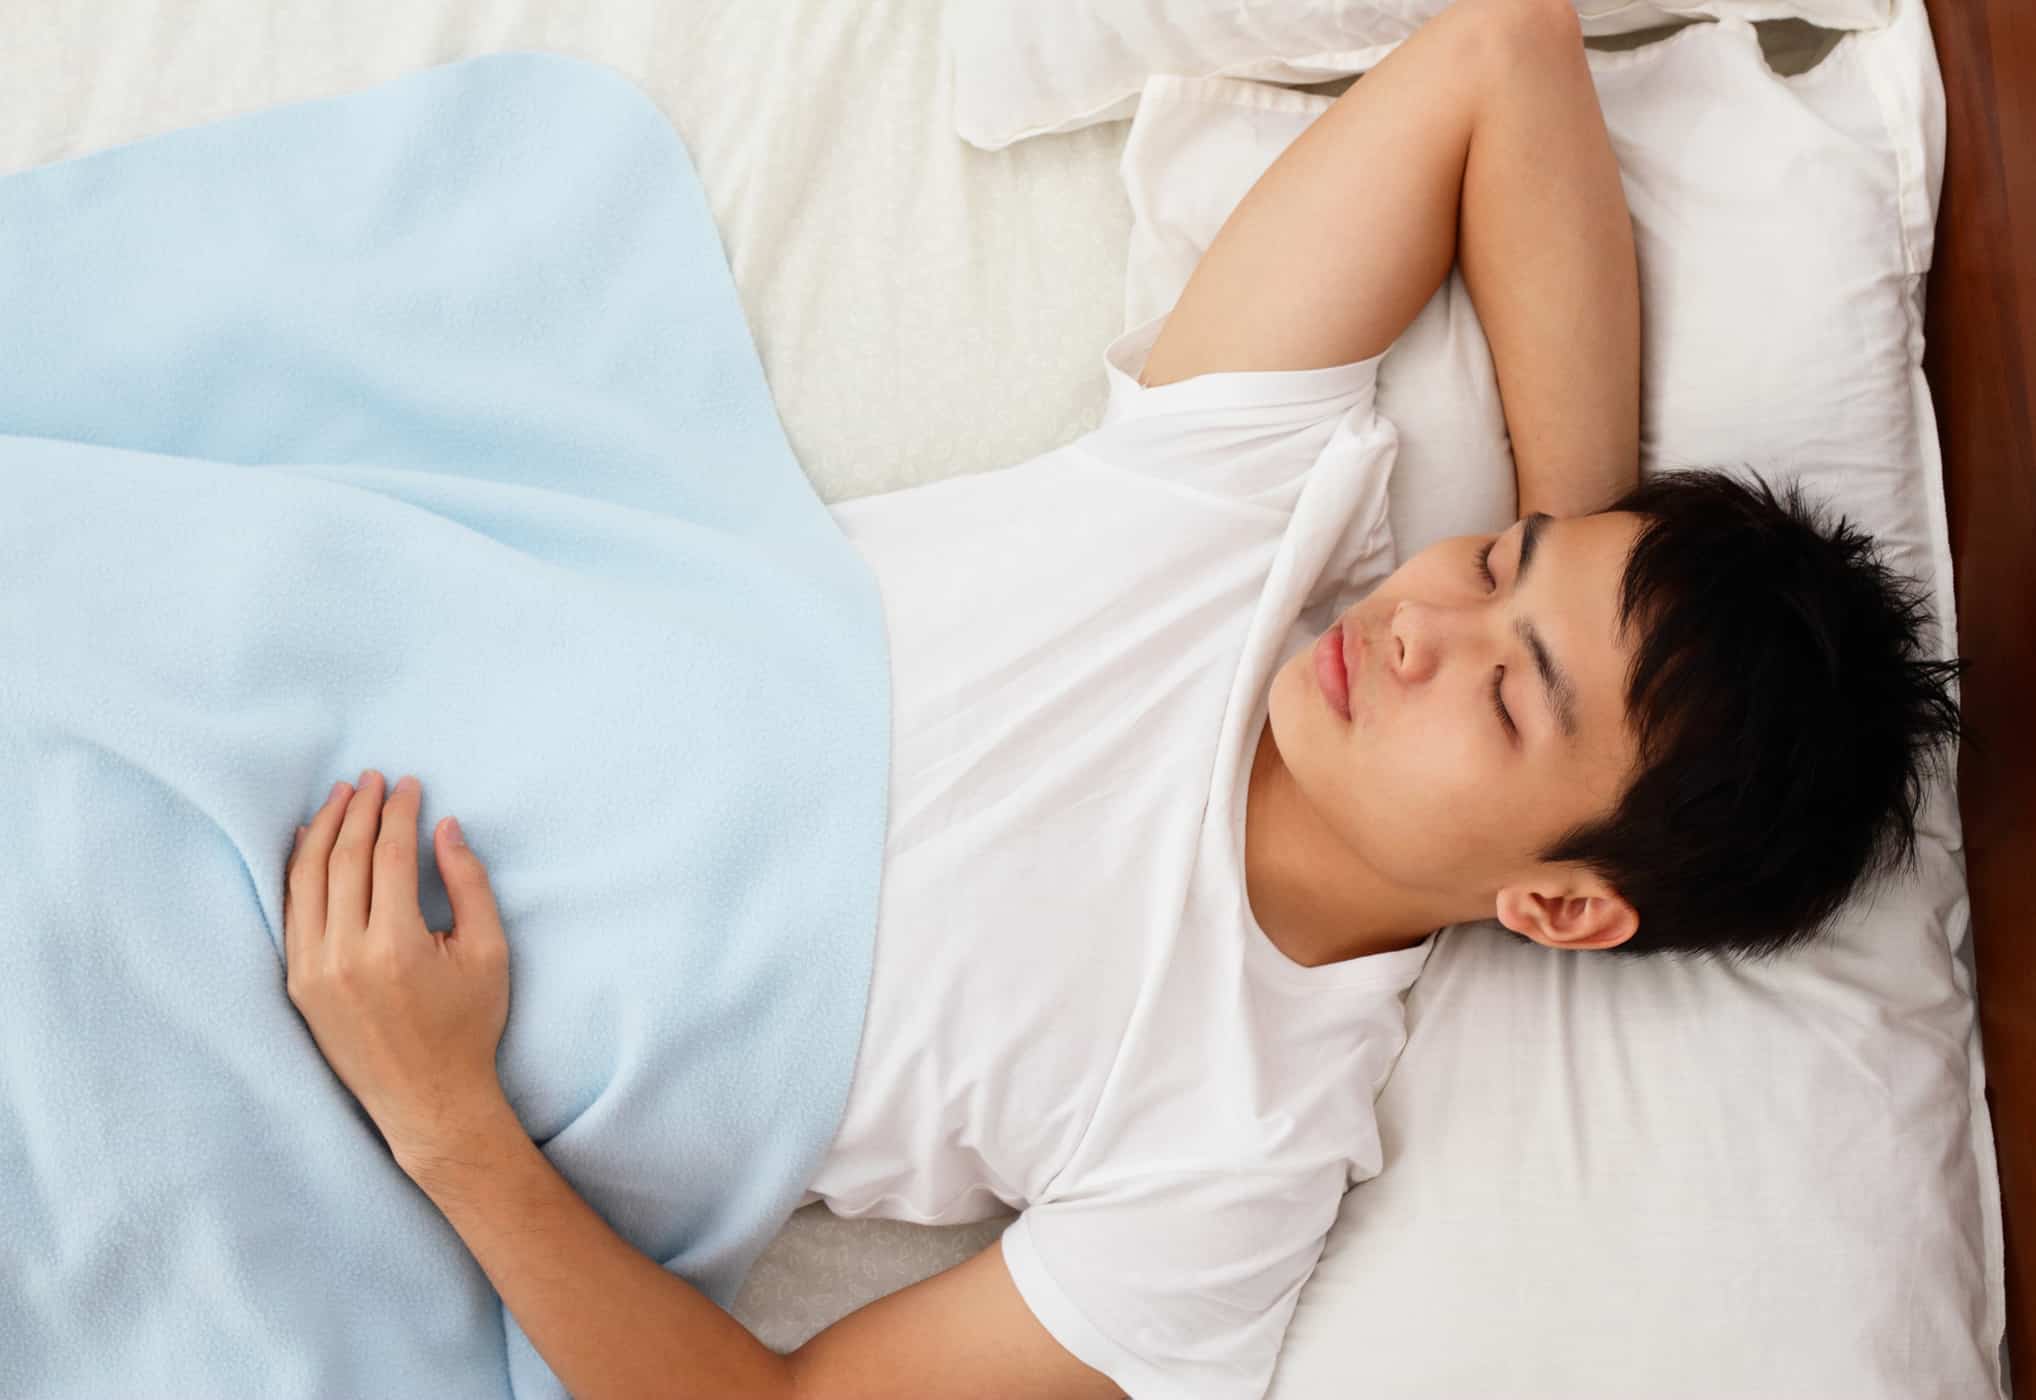 Schlafposition beeinflusst die Verdauung